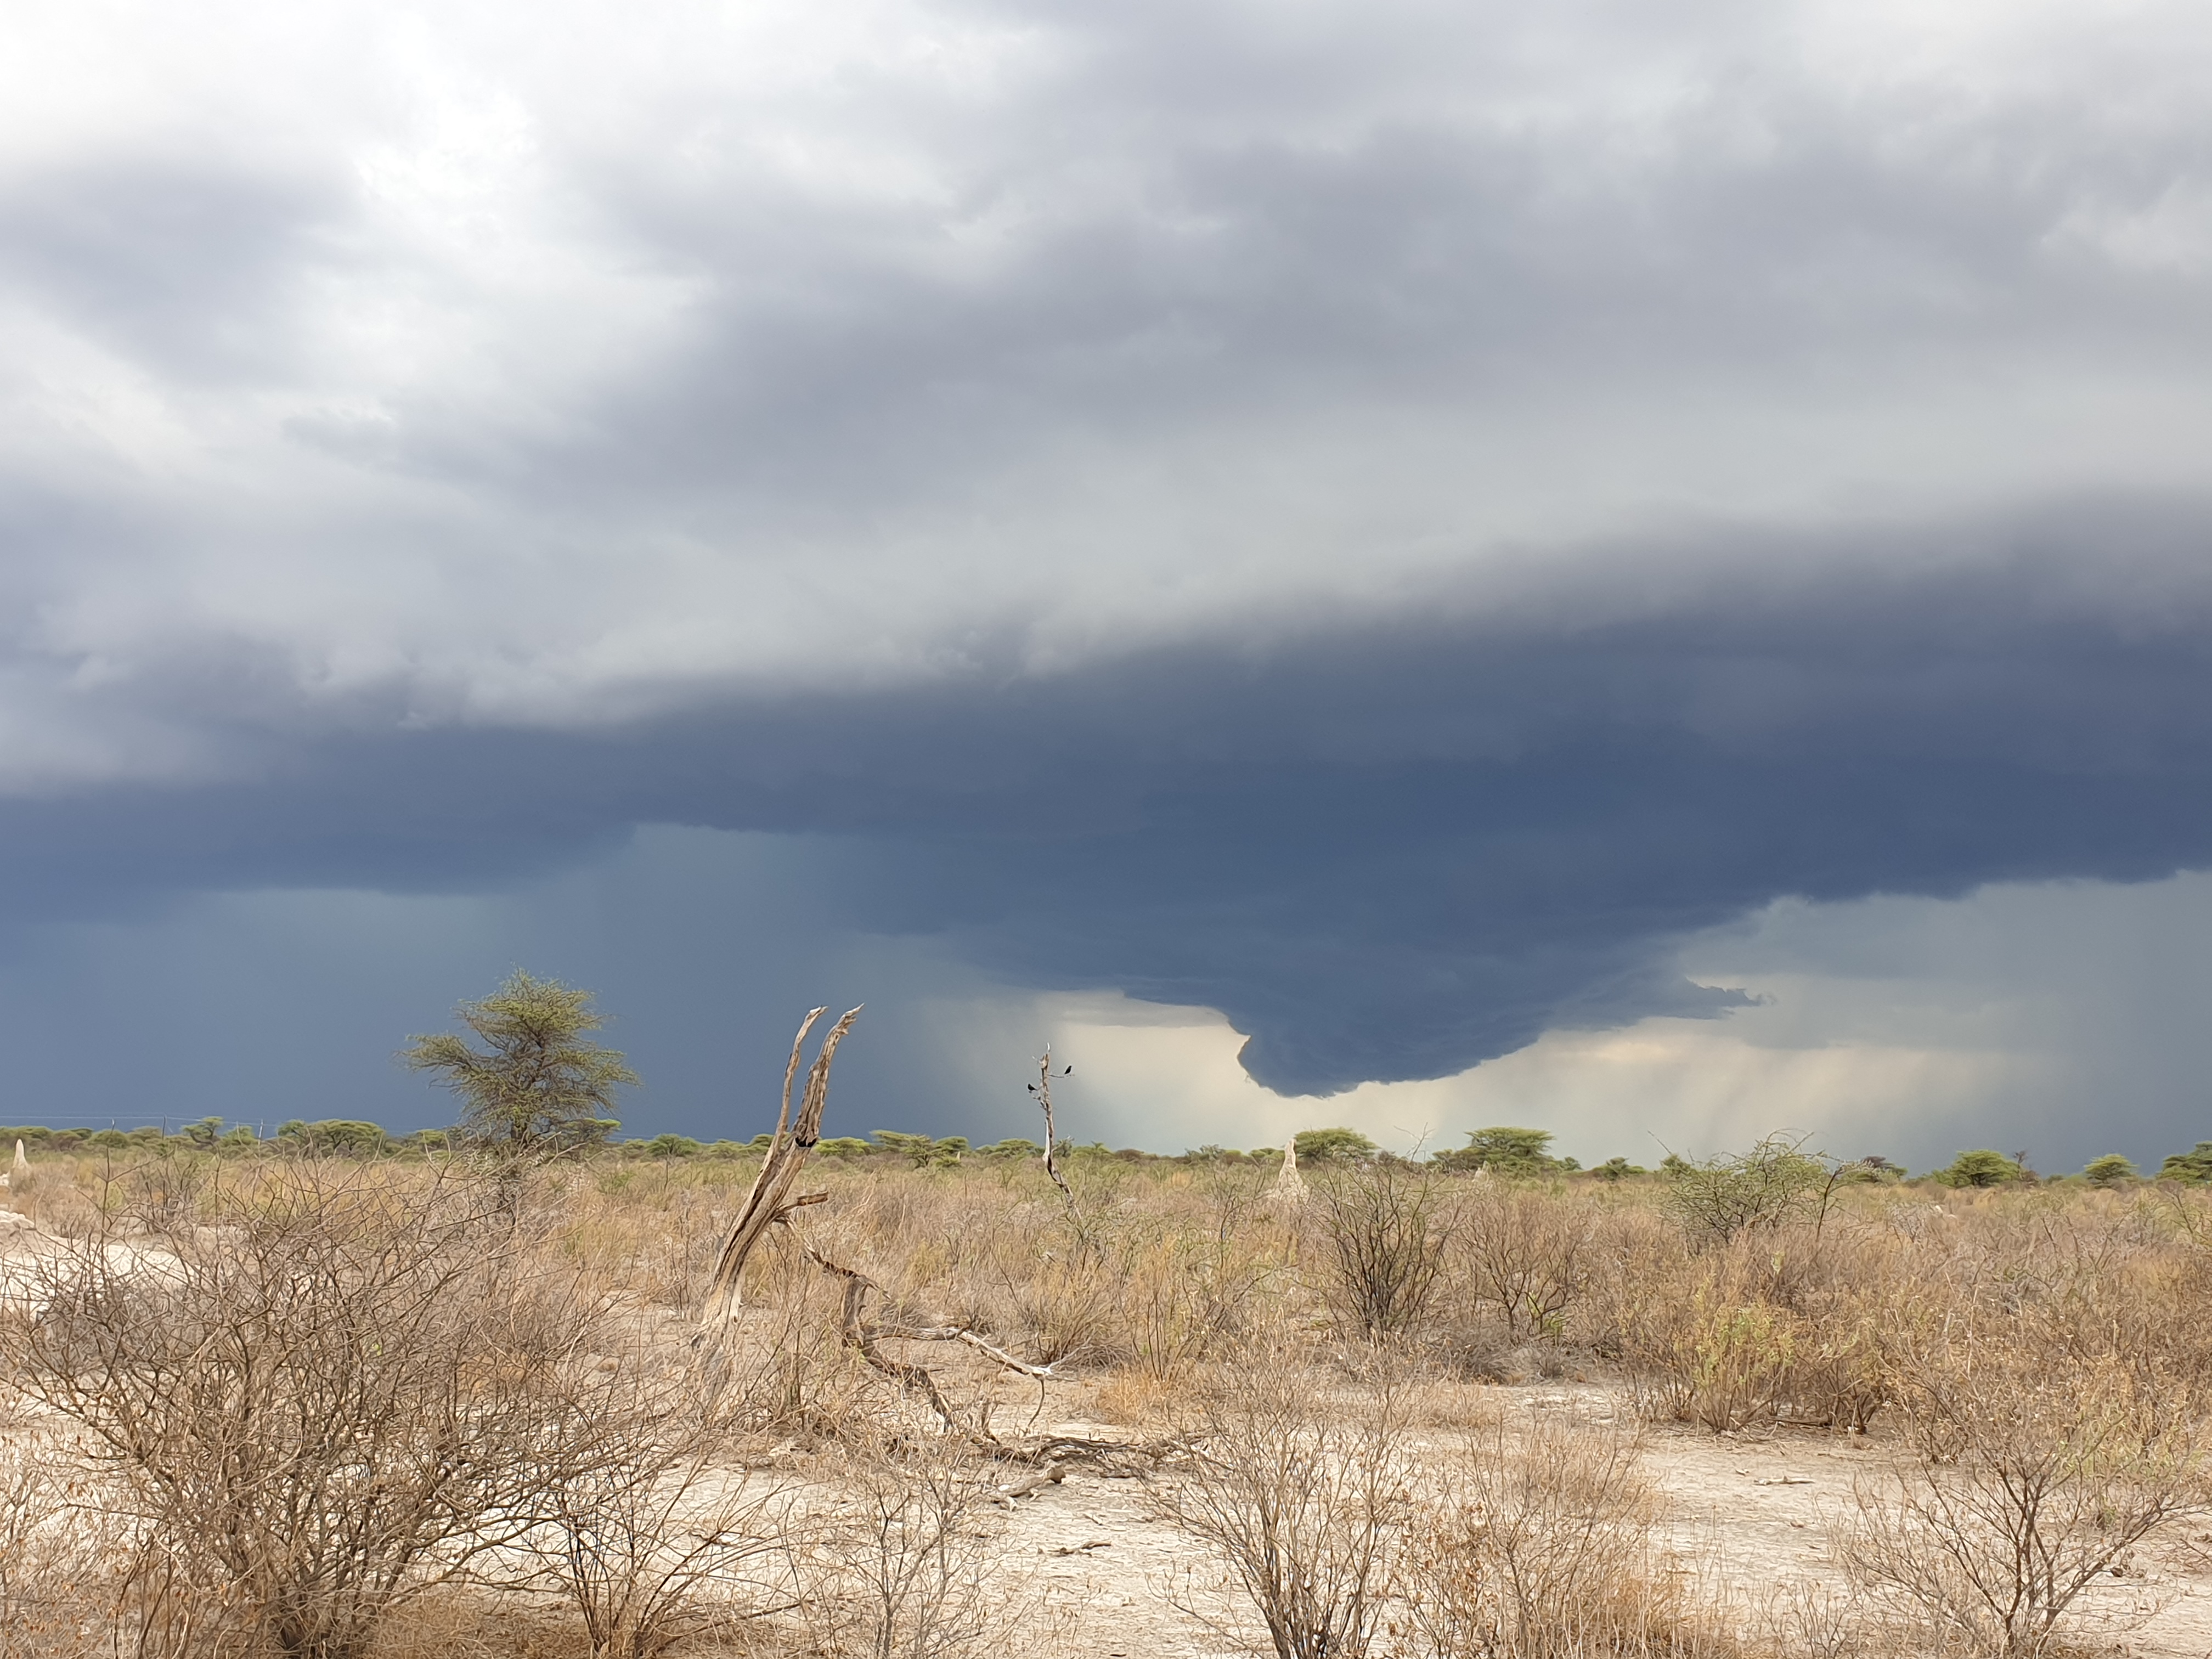 L'environnement aride de l'Onguma Nature Reserve lors de notre visite, tandis qu'un premier orage a éclaté dans le lointain, Etosha, Namibie.